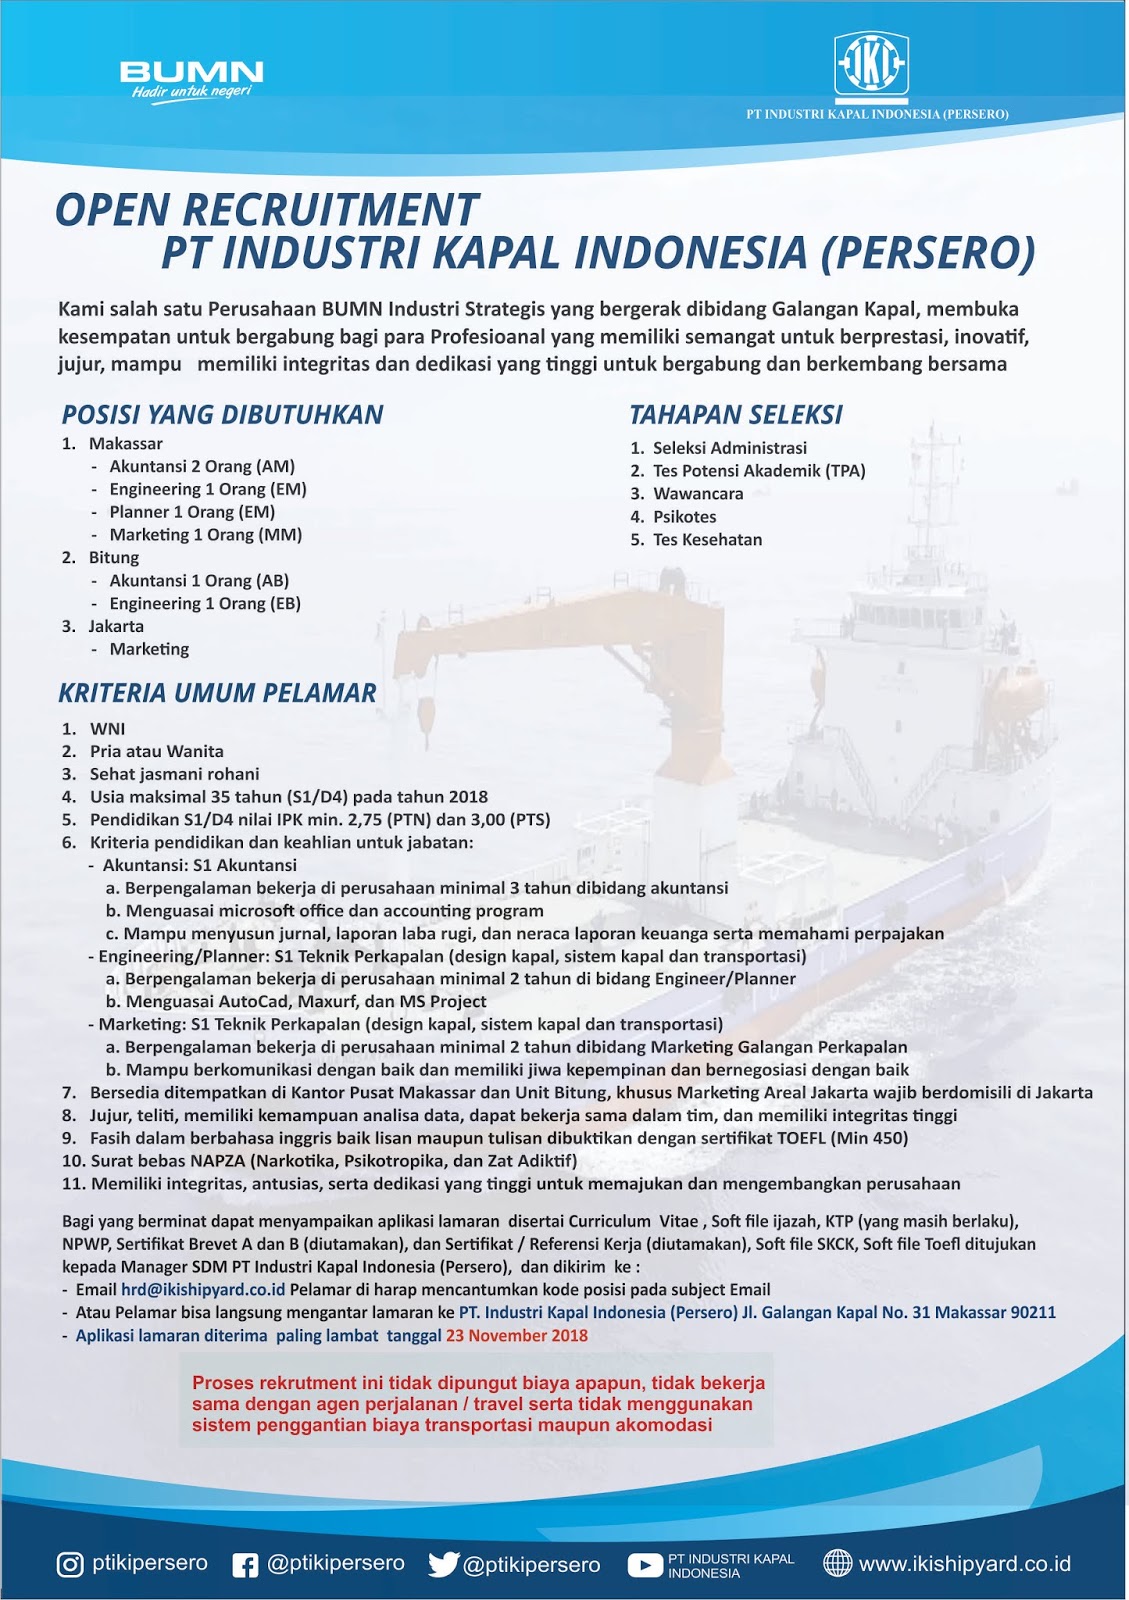 Lowongan Kerja PT Industri Kapal Indonesia (Persero) - Lowongan Kerja